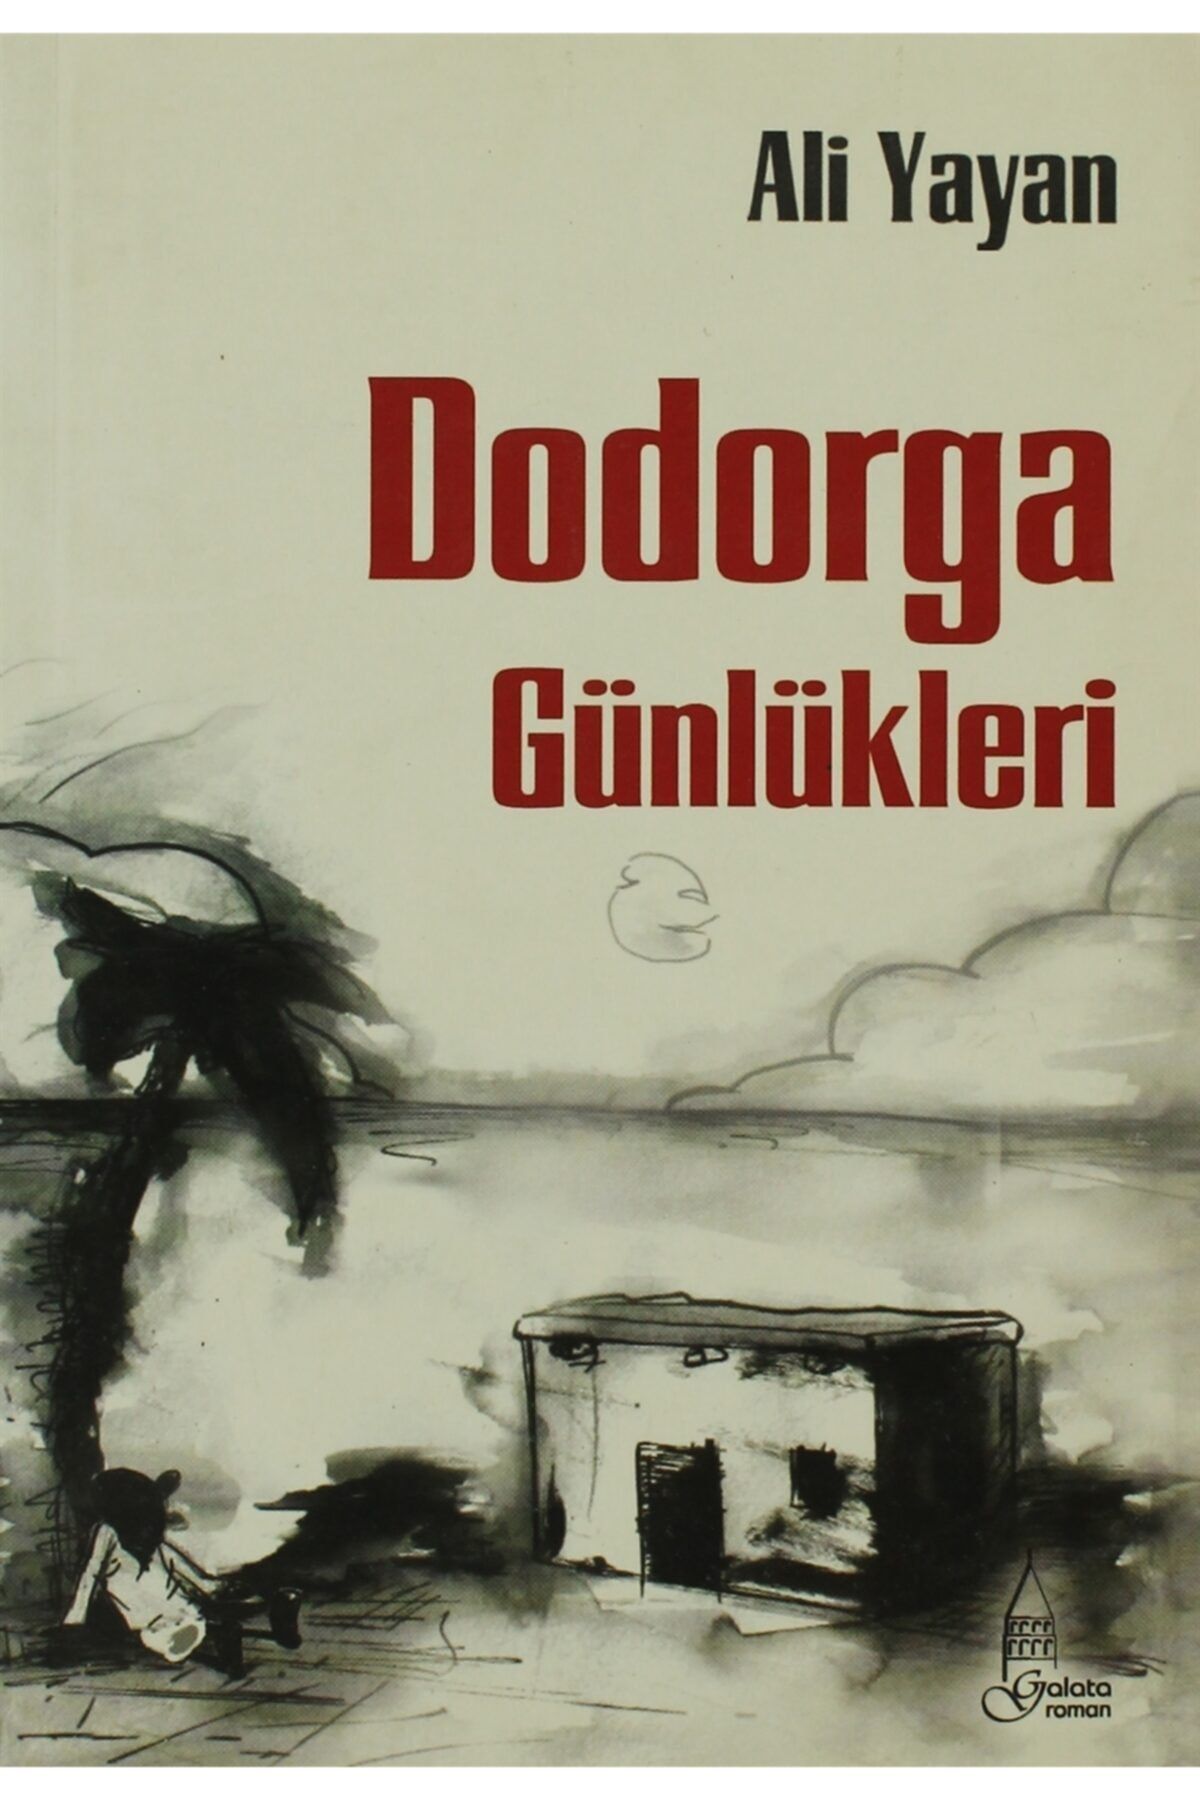 Galata Yayıncılık Dodorga - Ali Yayan -